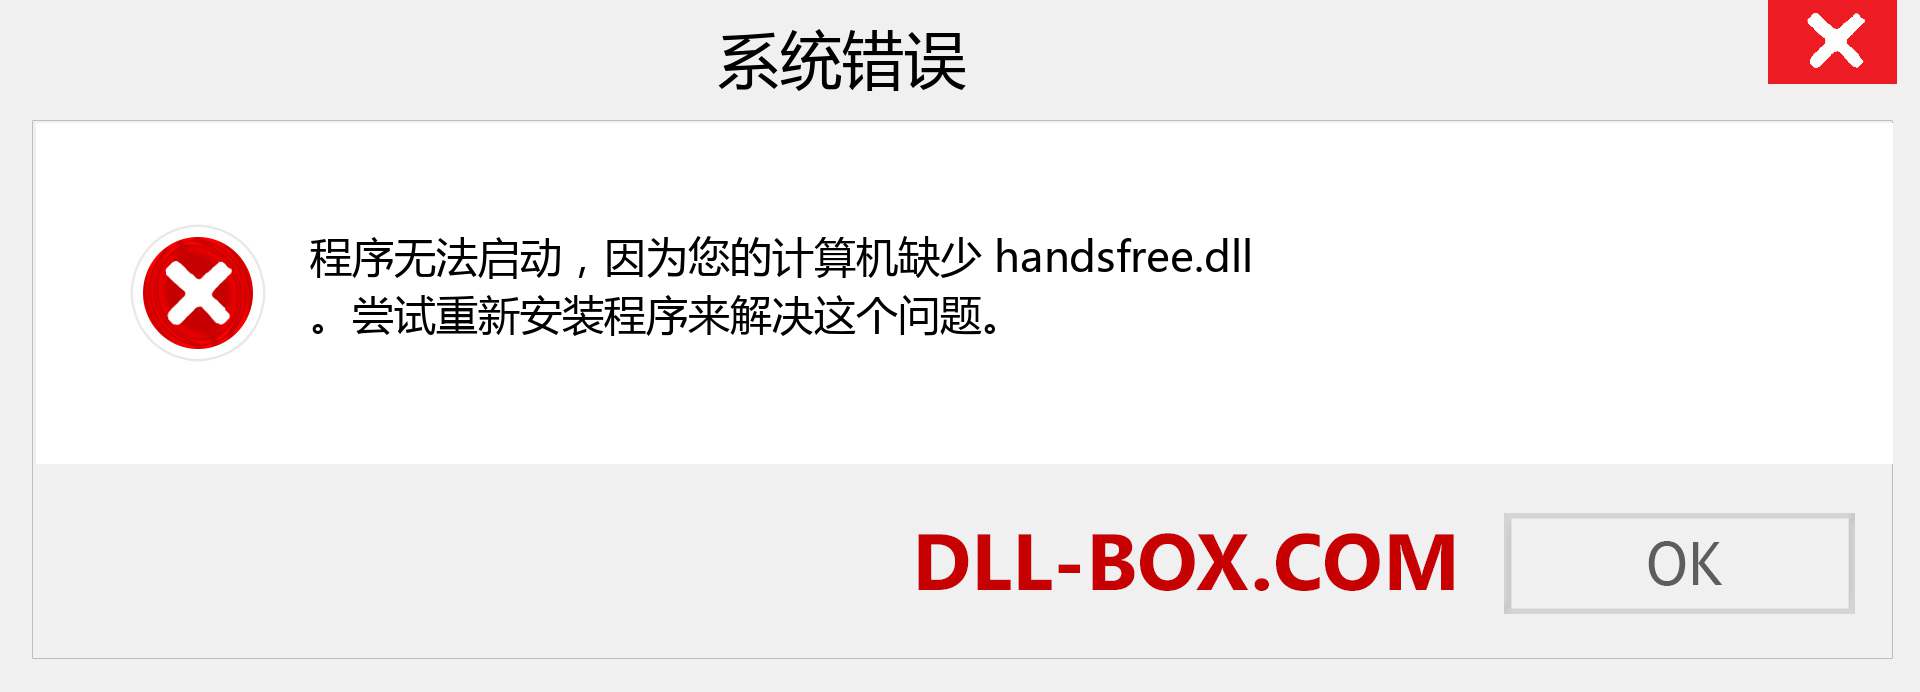 handsfree.dll 文件丢失？。 适用于 Windows 7、8、10 的下载 - 修复 Windows、照片、图像上的 handsfree dll 丢失错误